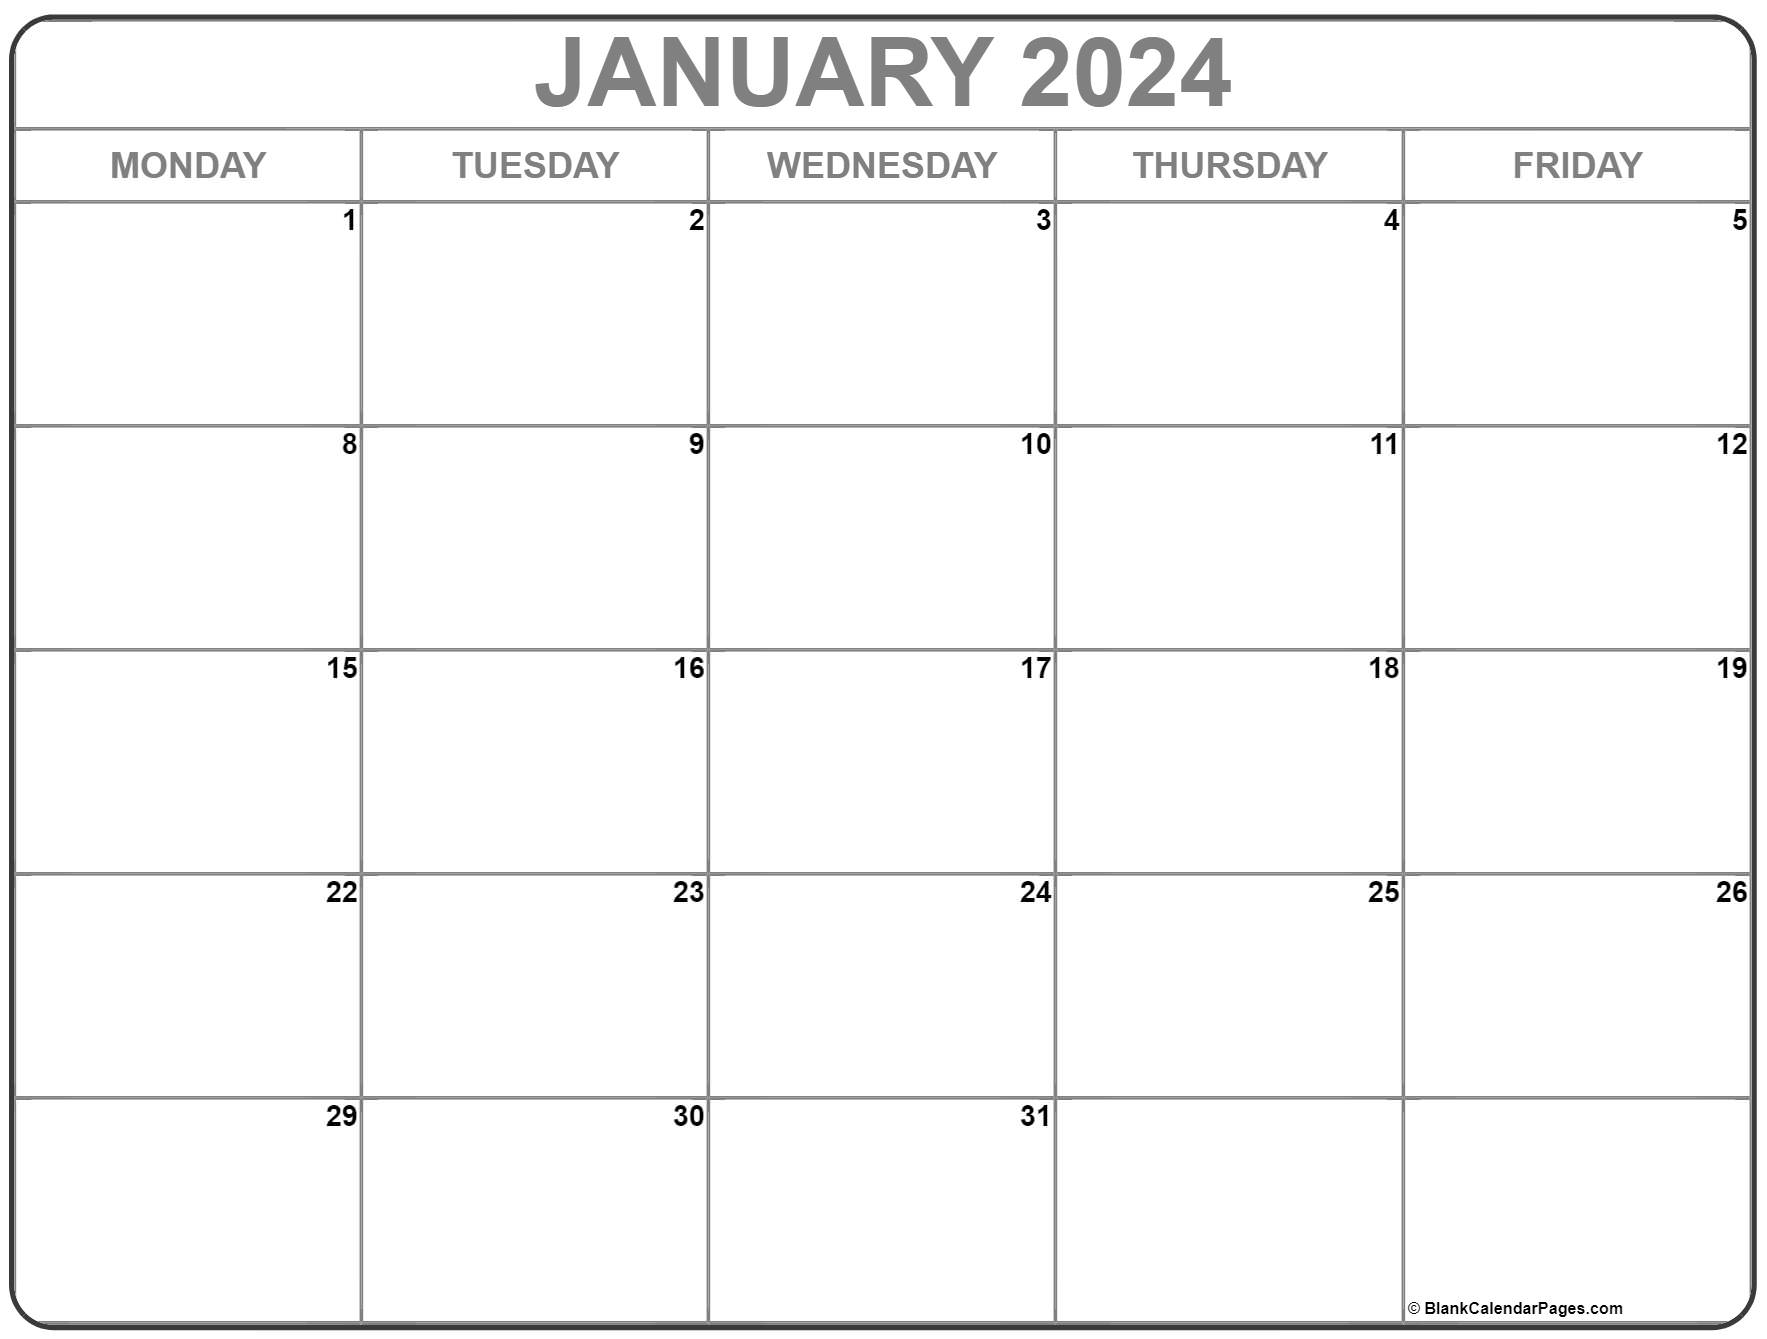 Google Calendar Jan 2024 Best The Best Famous - January 2024 Calendar